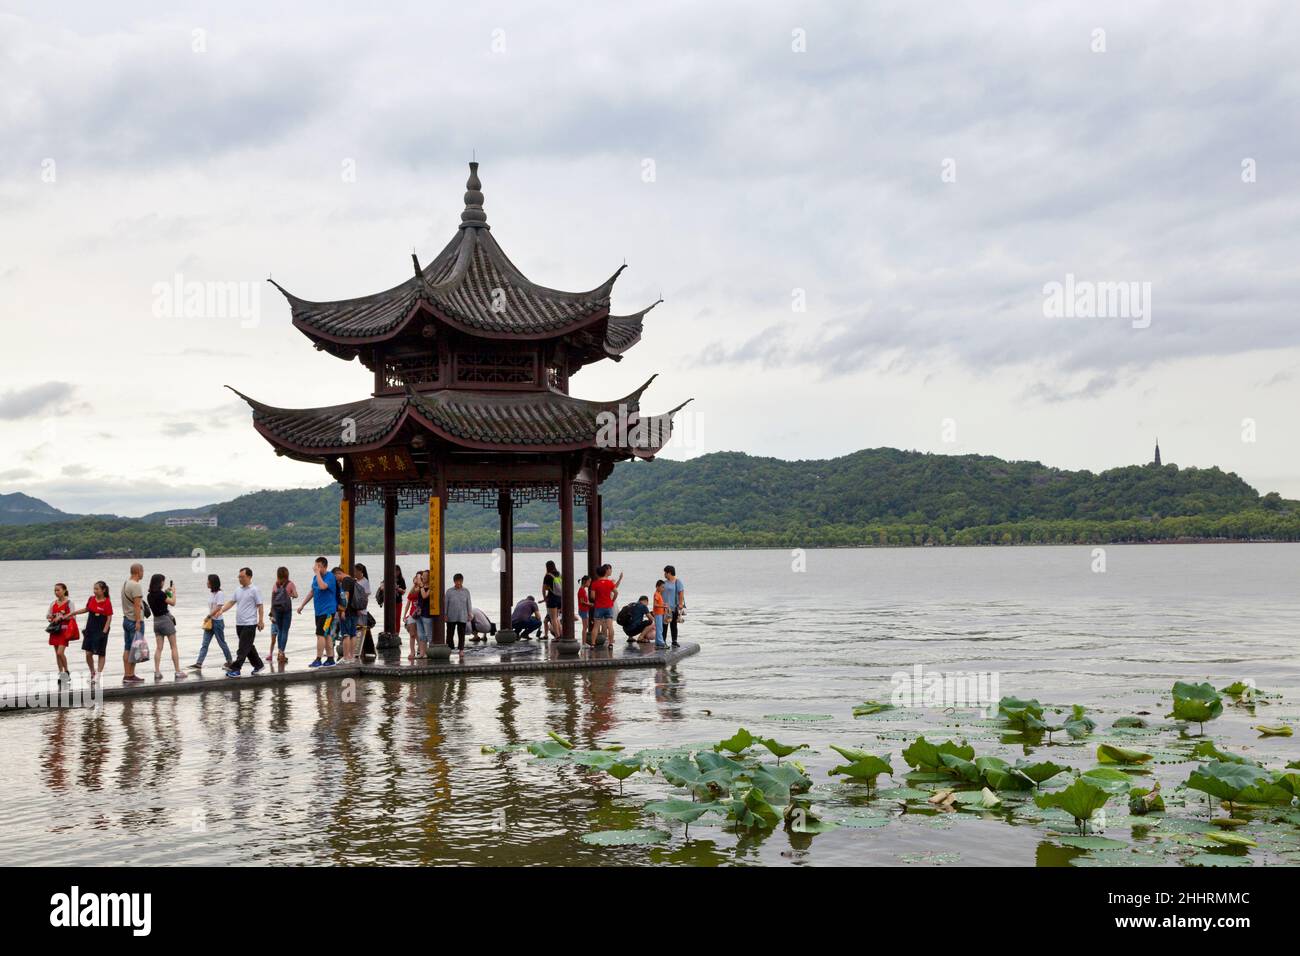 Hangzhou, China - August 13 2018: Kleiner Pavillon am Westsee, einem Süßwassersee, der durch drei Causeways in fünf Abschnitte unterteilt ist. Stockfoto